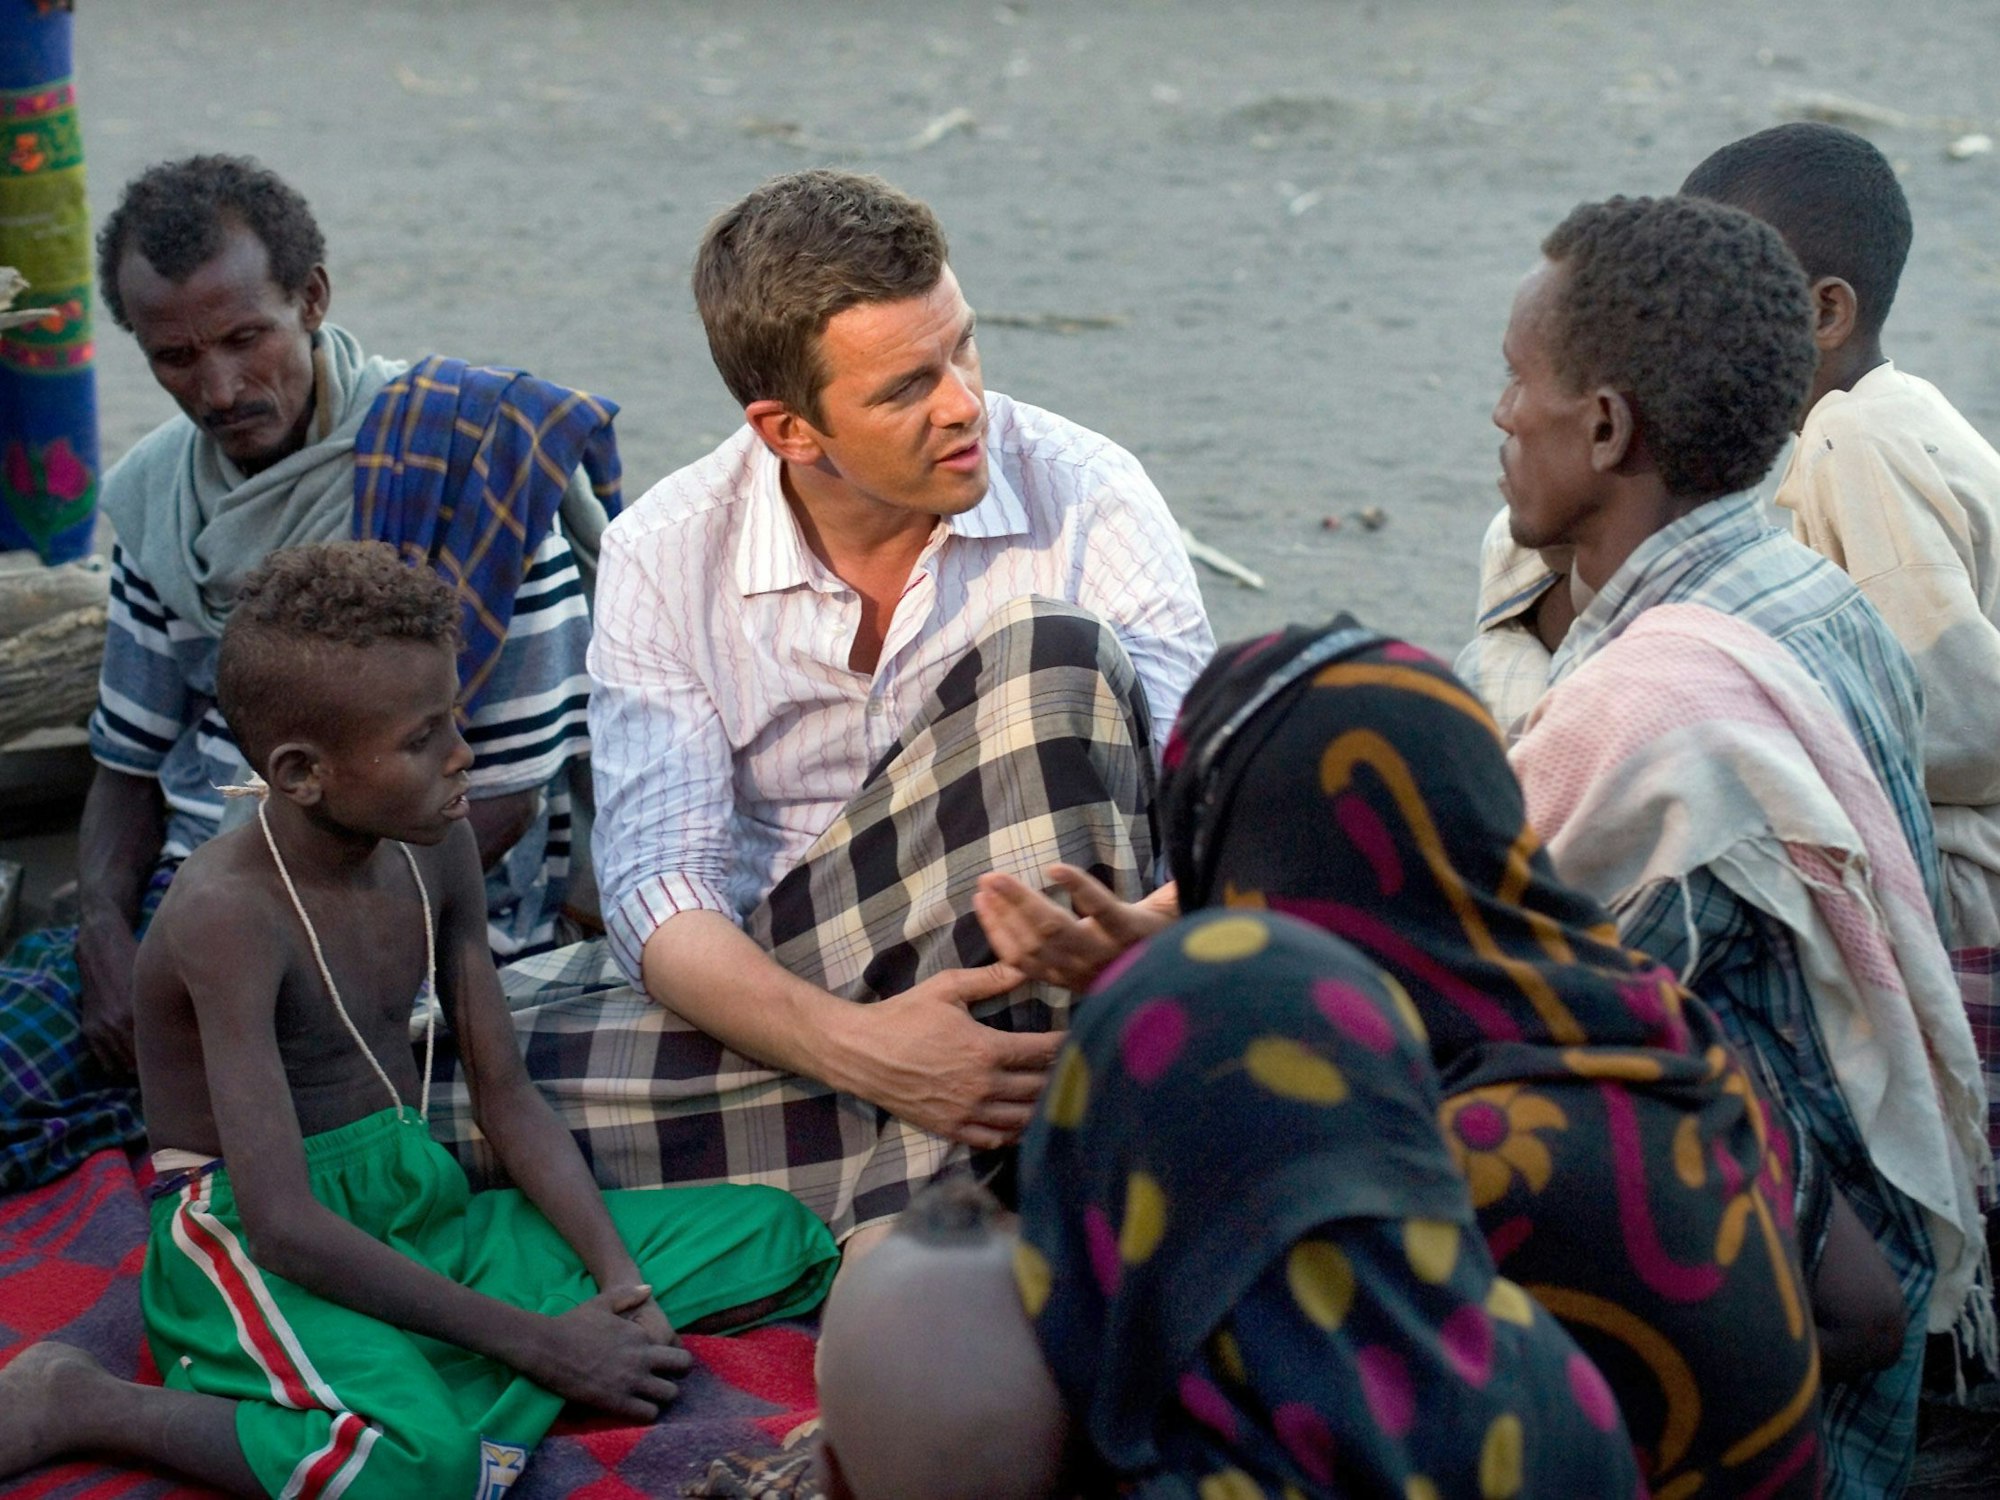 RTL-Moderator Markus Lanz im Gespräch mit einer Gruppe von Afar-Nomaden in der Afar-Halbwüste im Norden Äthiopiens.